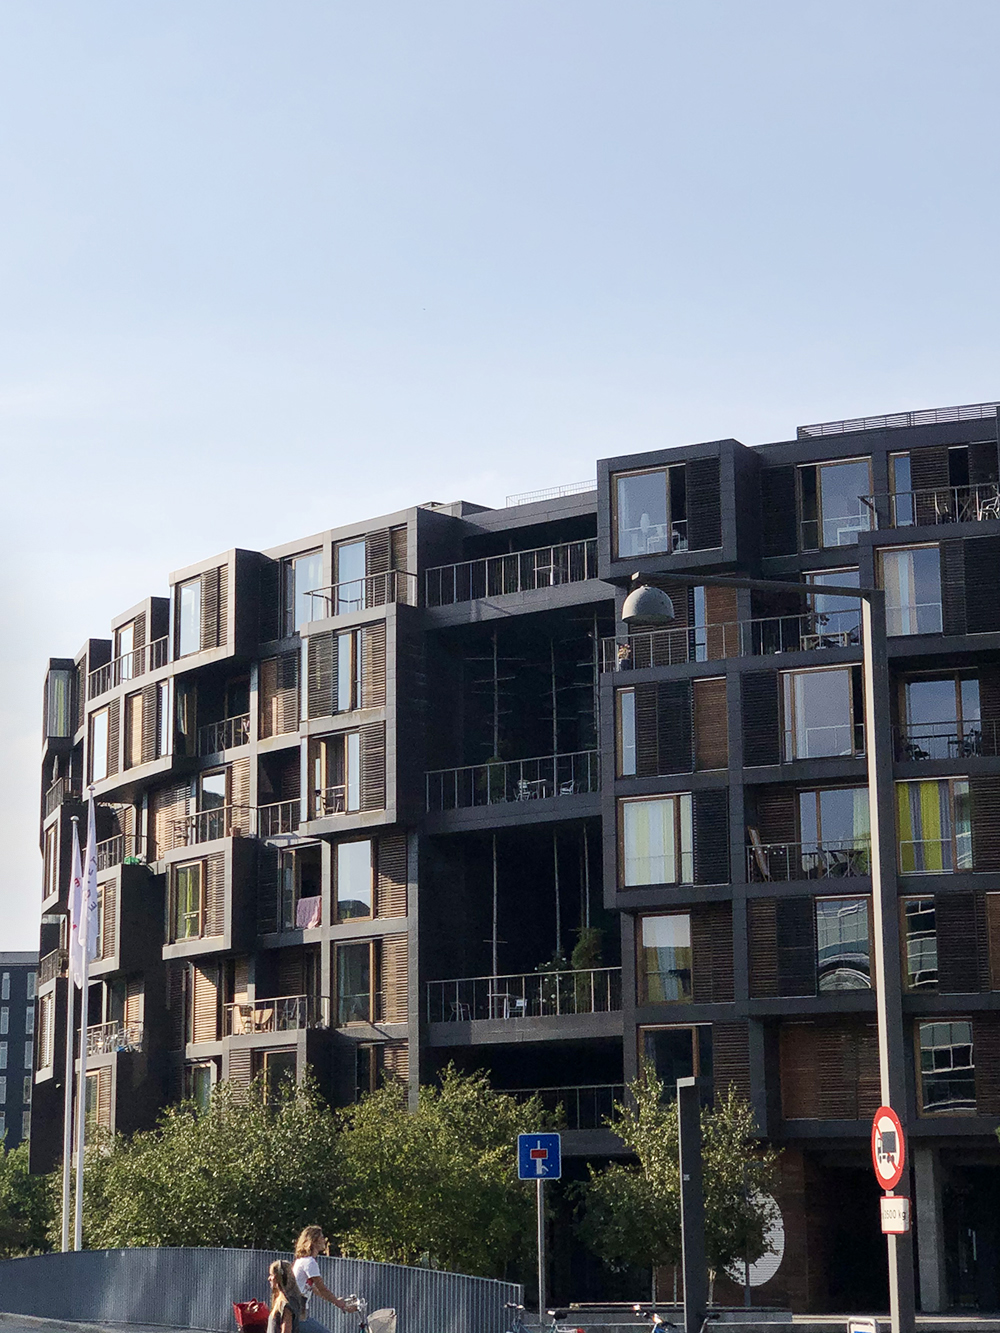 Студенческий городок Тиетген — самое известное общежитие мира, находящееся в Копенгагене. Его архитектура меня поразила